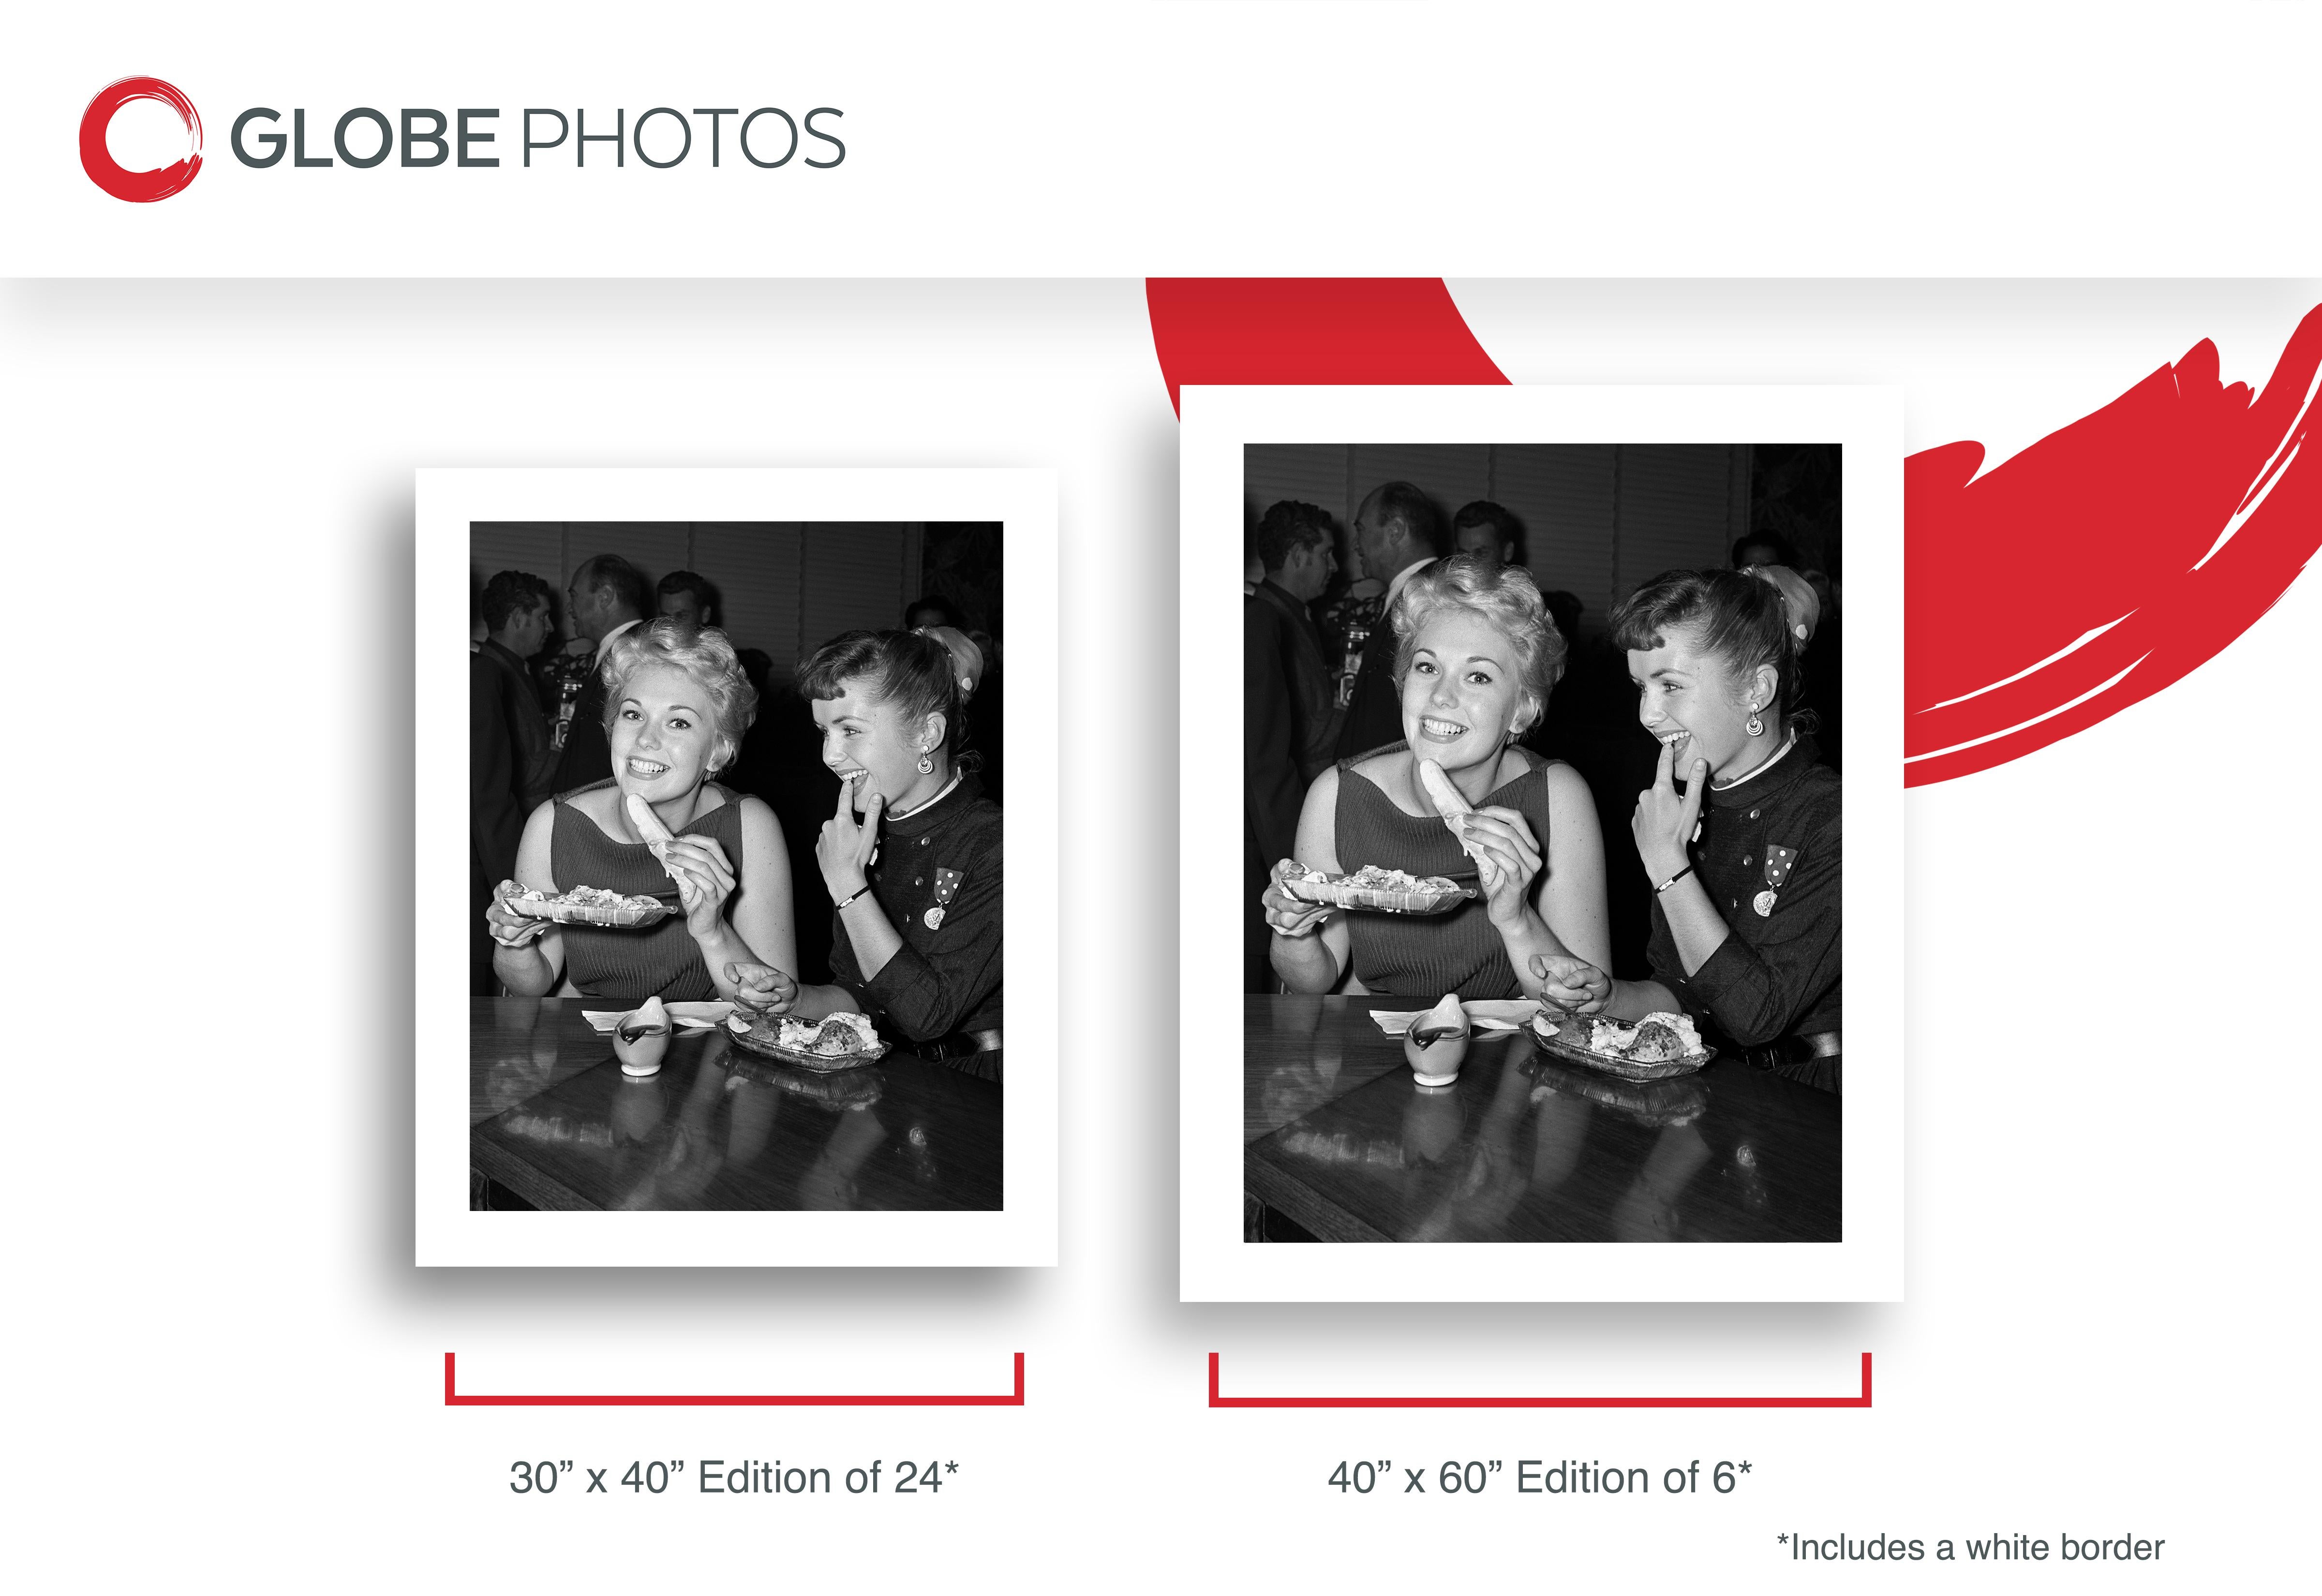 Schwarz-Weiß-Porträt von Debbie Reynolds und Kim Novak beim Essen von Bananensplits bei Schwab's.
 
Debbie Reynolds war eine amerikanische Schauspielerin, Sängerin und Geschäftsfrau. Ihre Karriere erstreckte sich über fast 70 Jahre. Für ihre